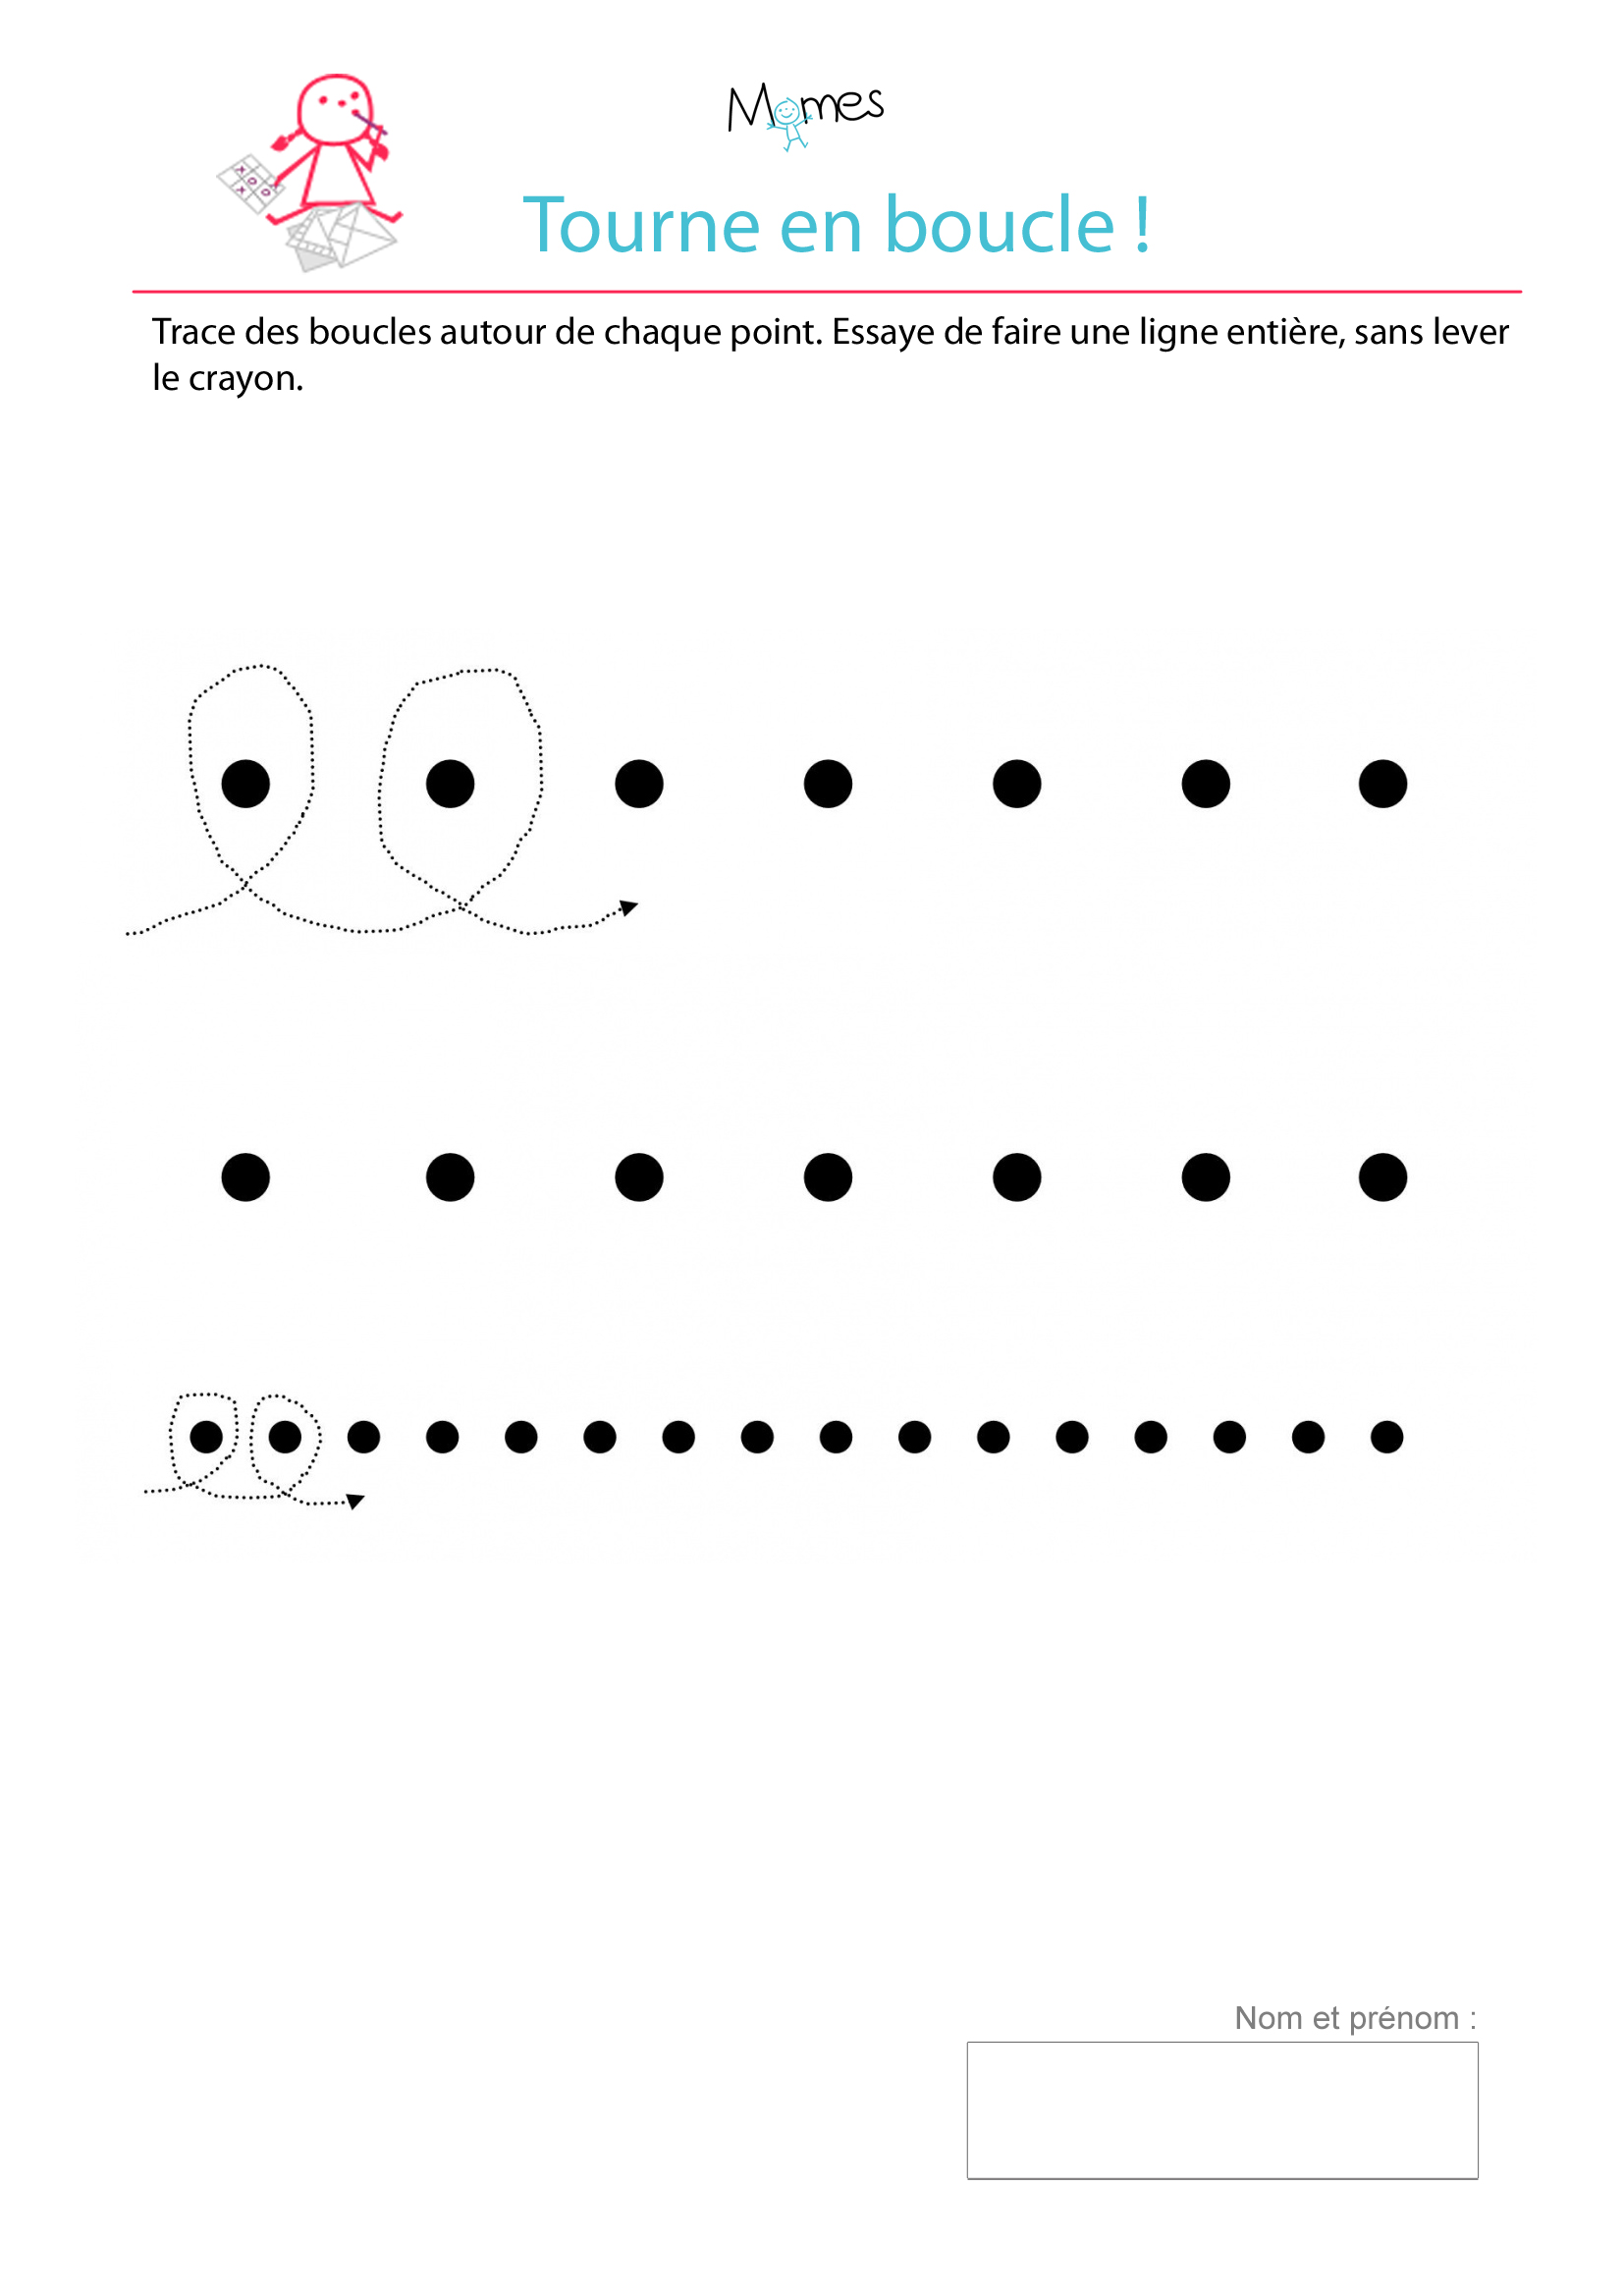 Exercice d'écriture : tracer des boucles autour de points ...